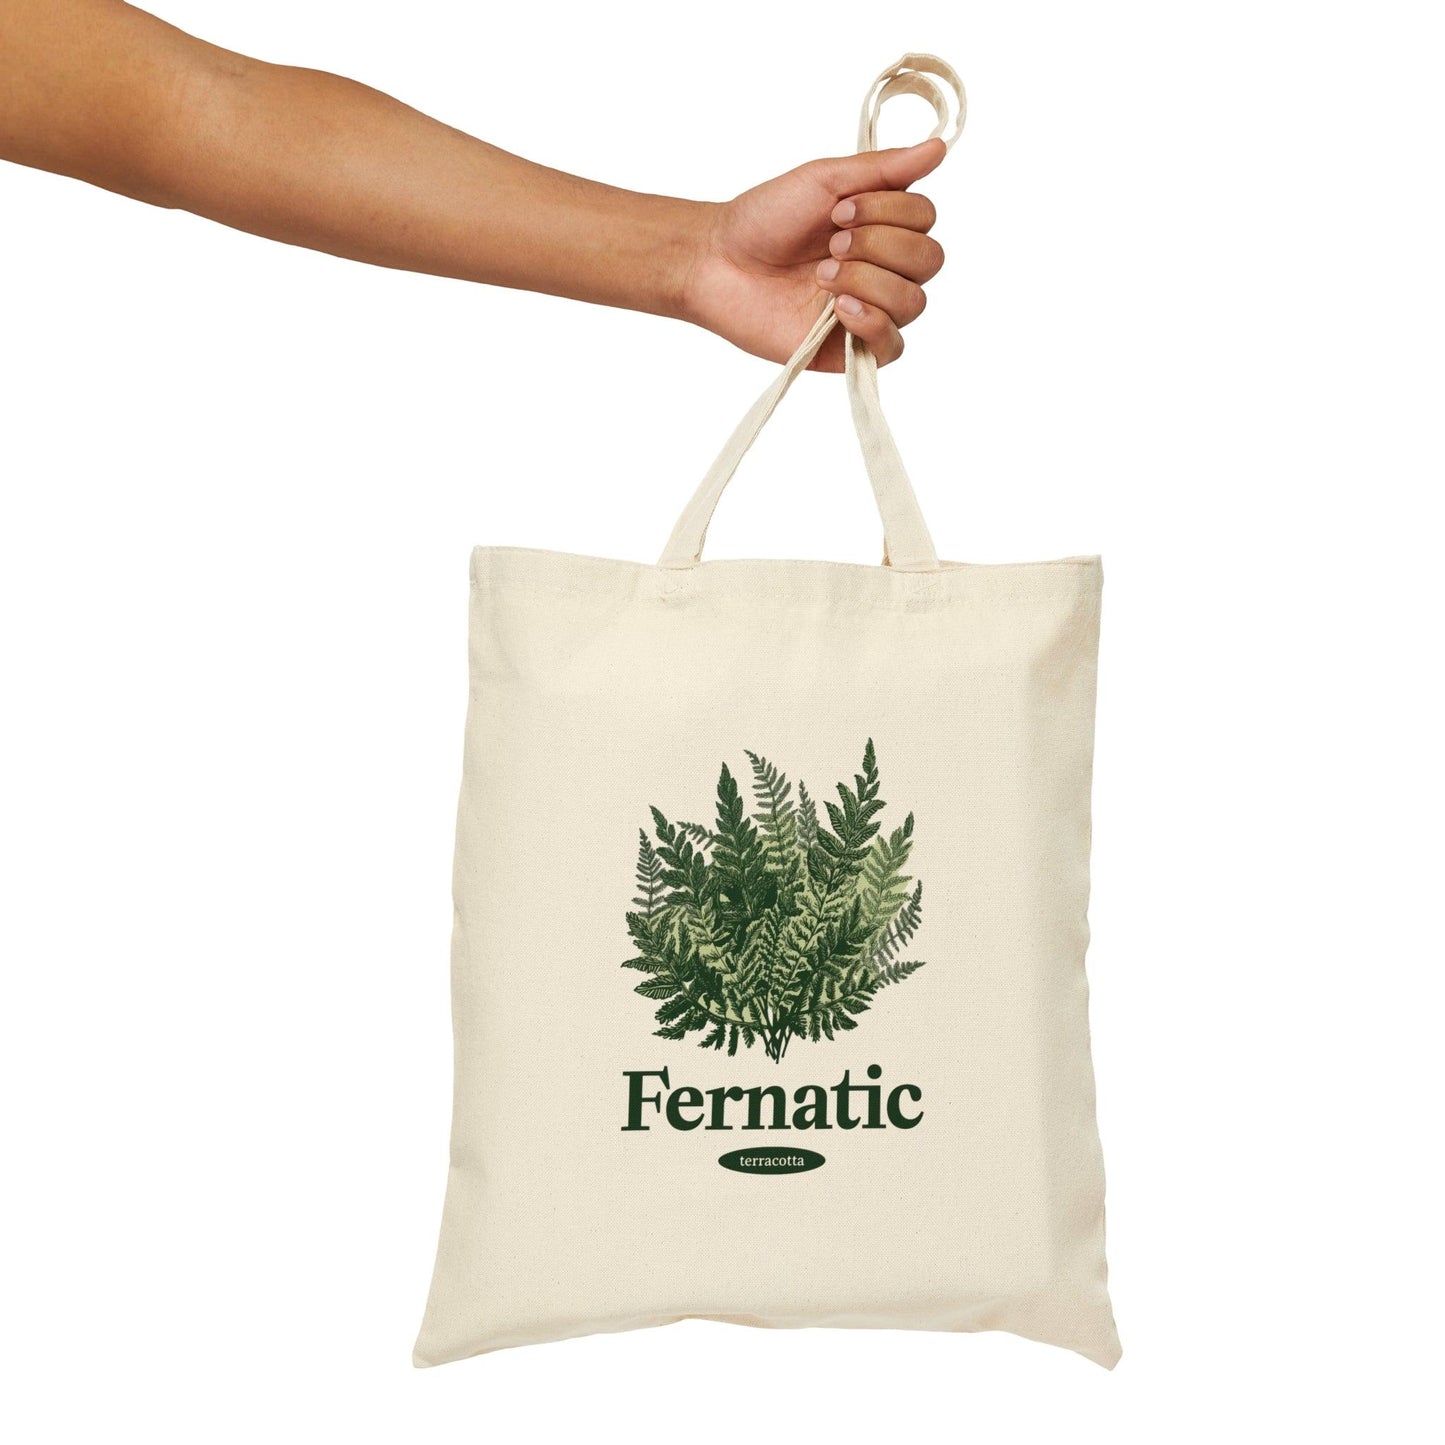 Fernatic Tote Bag